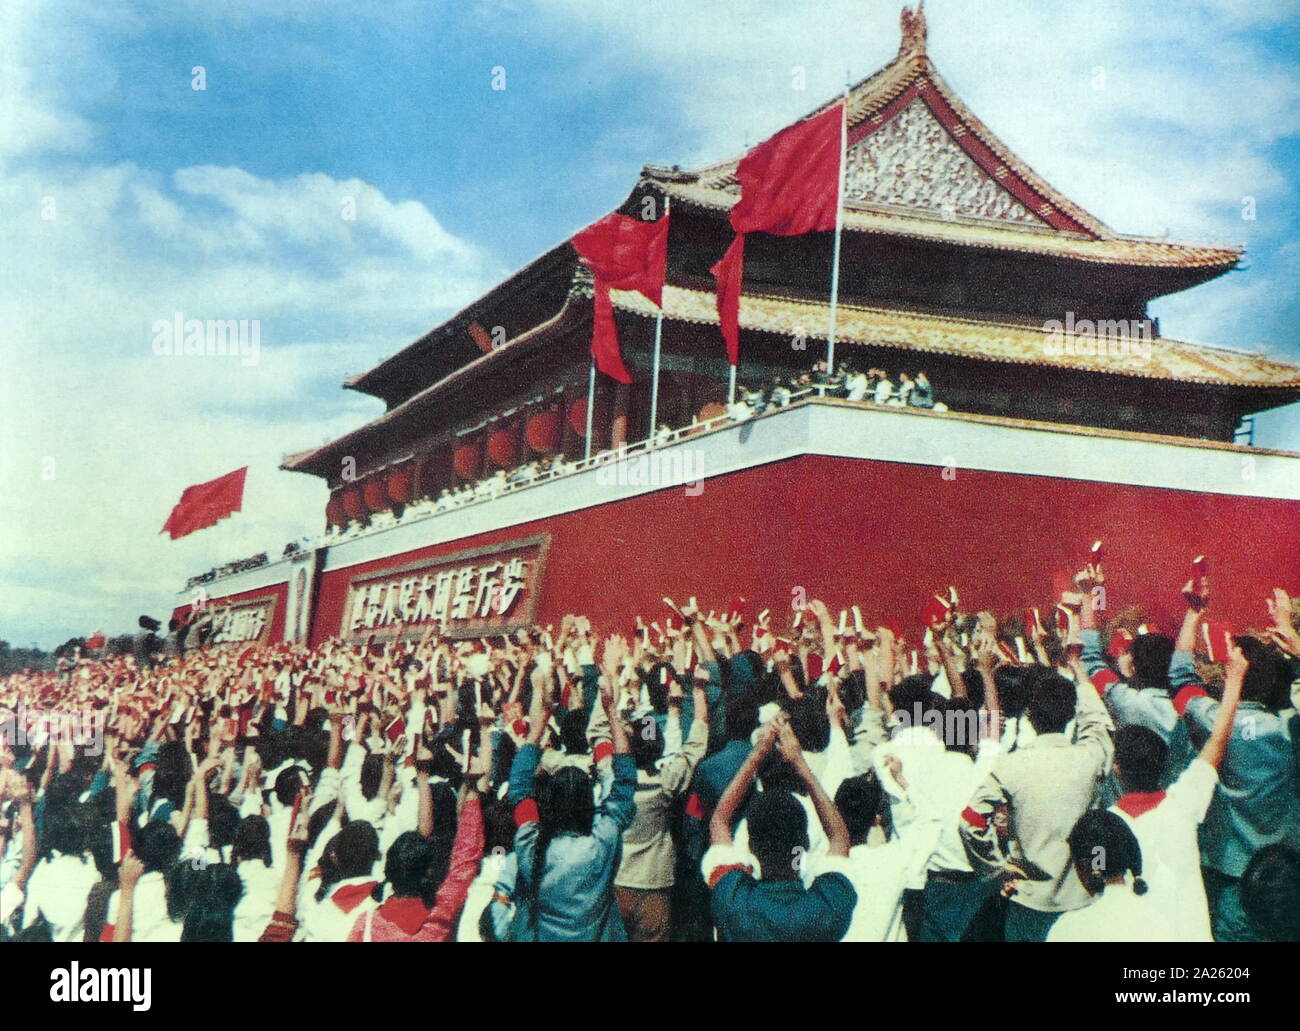 Die Roten Garden auf dem Platz des Himmlischen Friedens in Peking, die Kopien der "Gedanken des Vorsitzenden Mao", während der Kulturrevolution. China 1967 Stockfoto